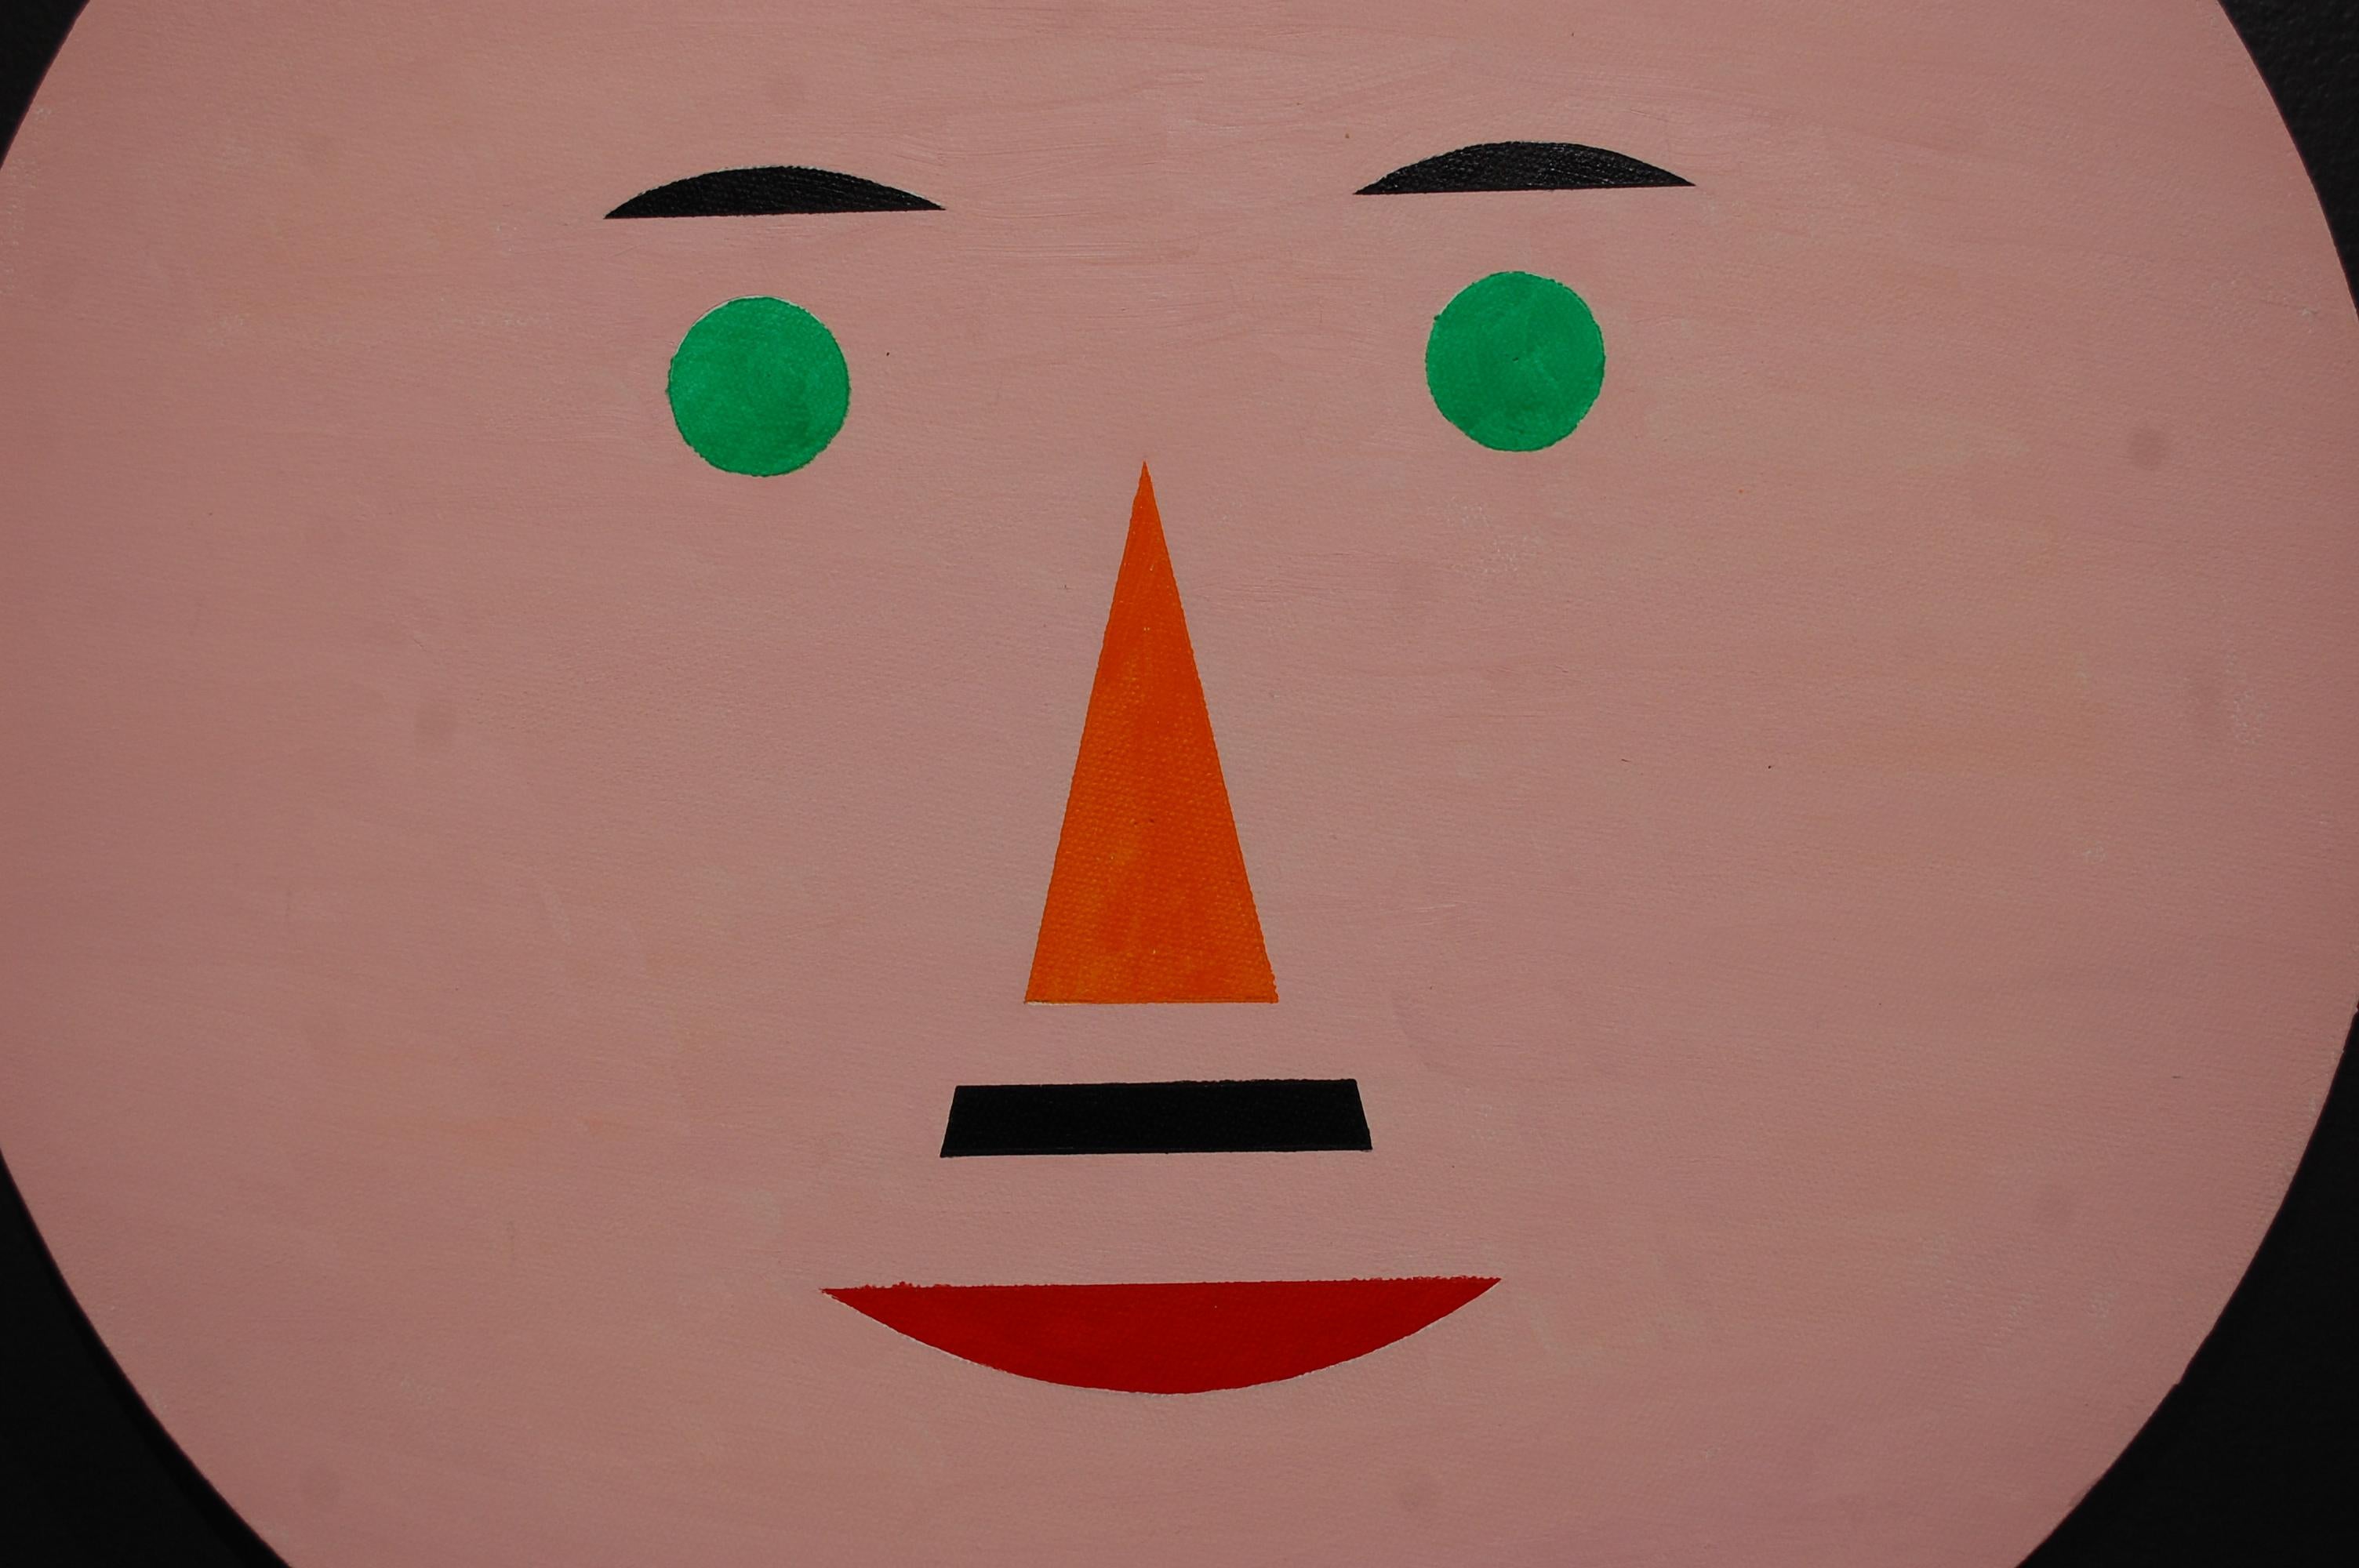 Lächeln und glücklich sein #2 – Painting von Jaro